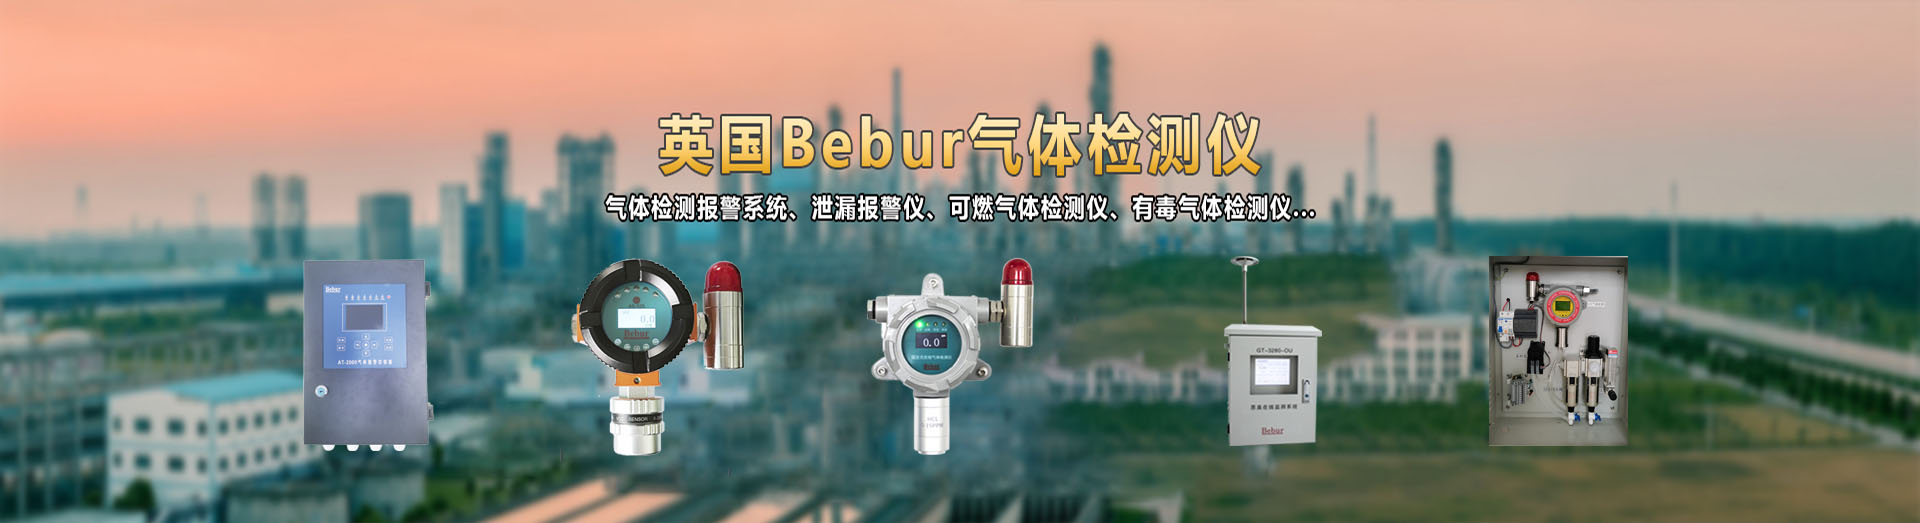 英国Bebur品牌进口四合一气体检测仪系列产品